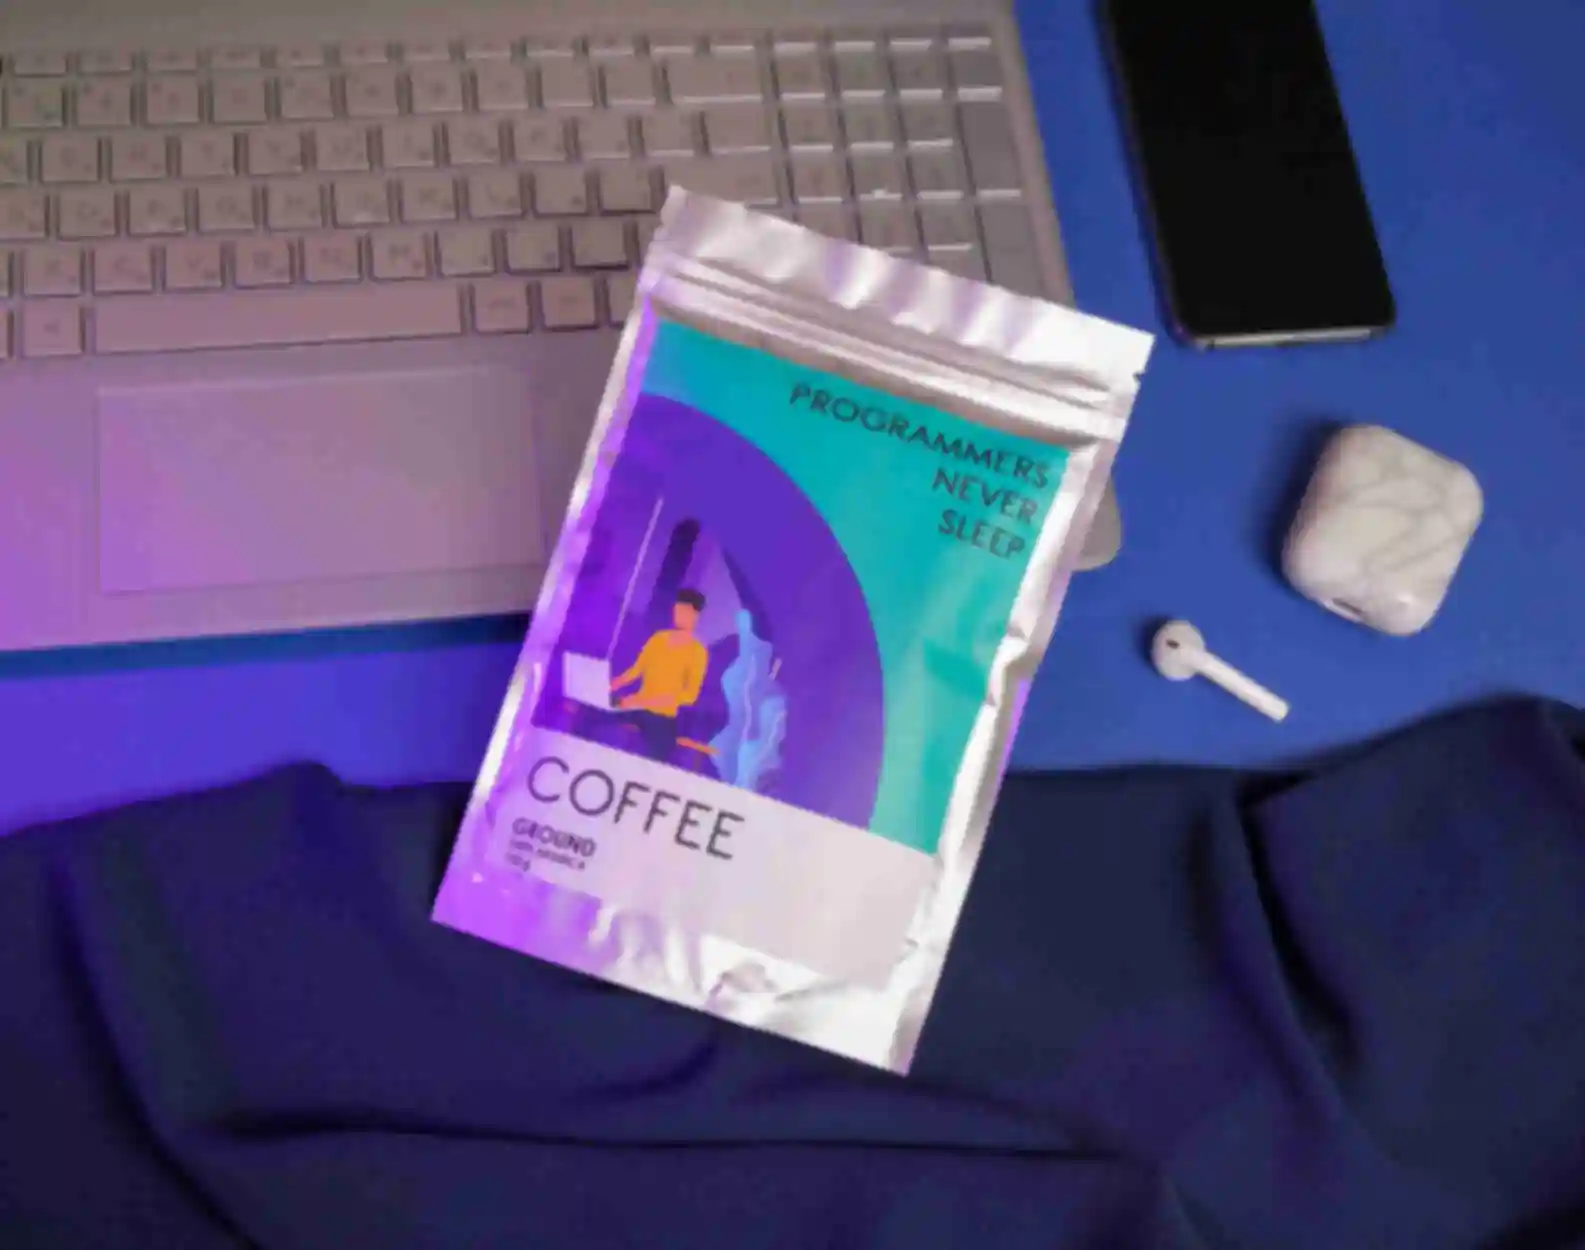 Кава «Programmers never sleep» • Преміальна кава • Подарунок для програміста, айтішника, розробникаФото №1